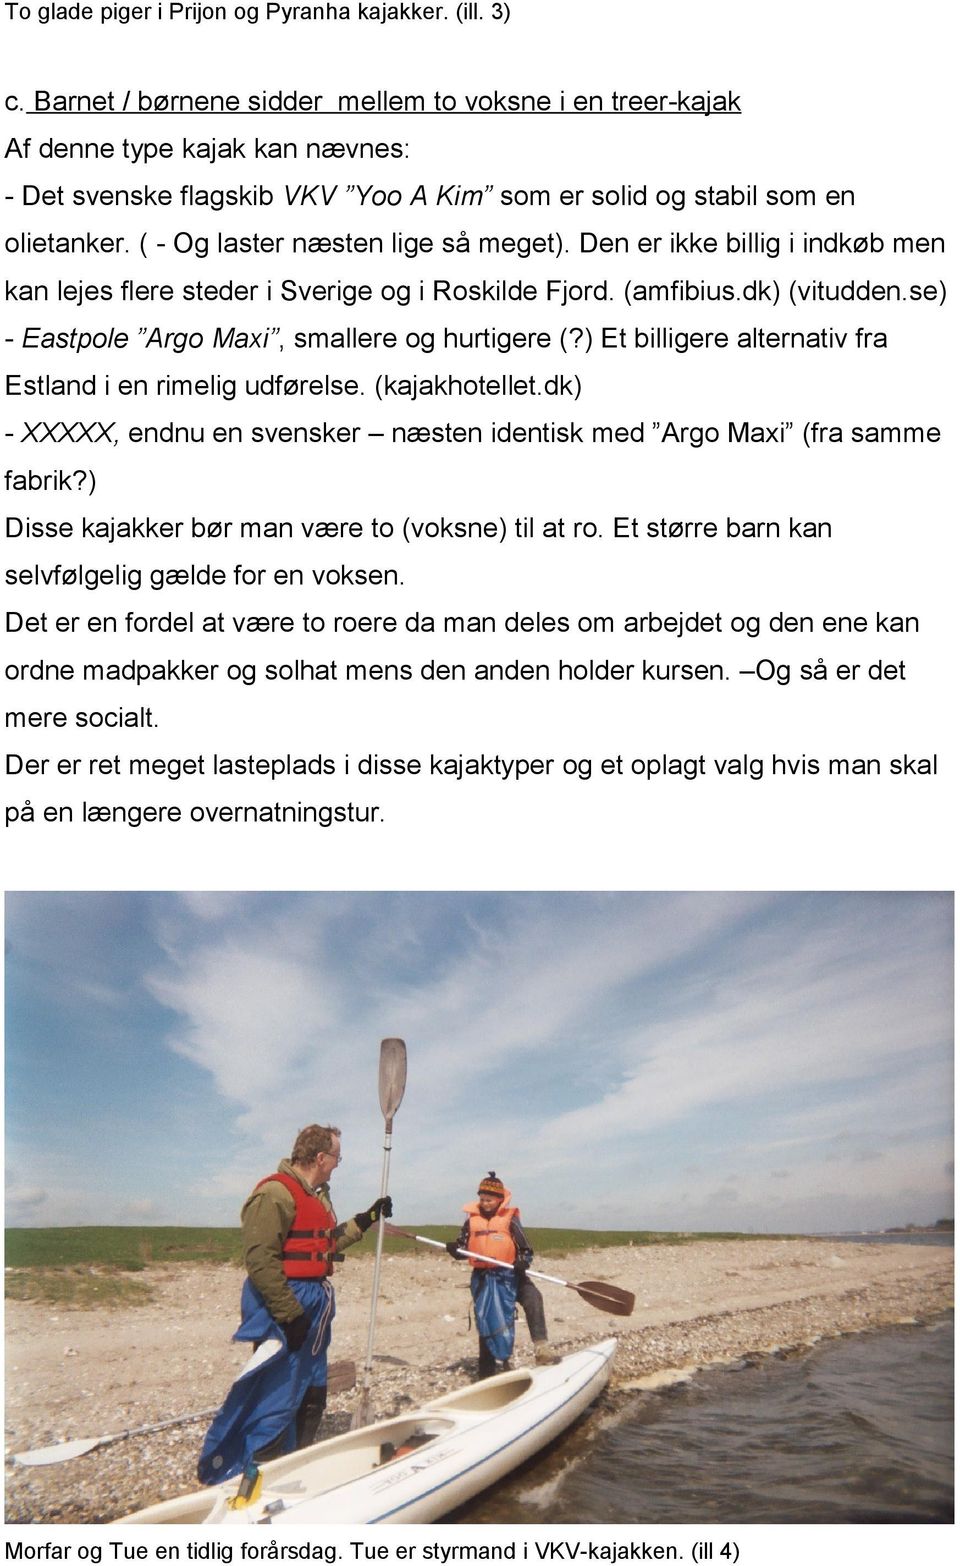 ( - Og laster næsten lige så meget). Den er ikke billig i indkøb men kan lejes flere steder i Sverige og i Roskilde Fjord. (amfibius.dk) (vitudden.se) - Eastpole Argo Maxi, smallere og hurtigere (?